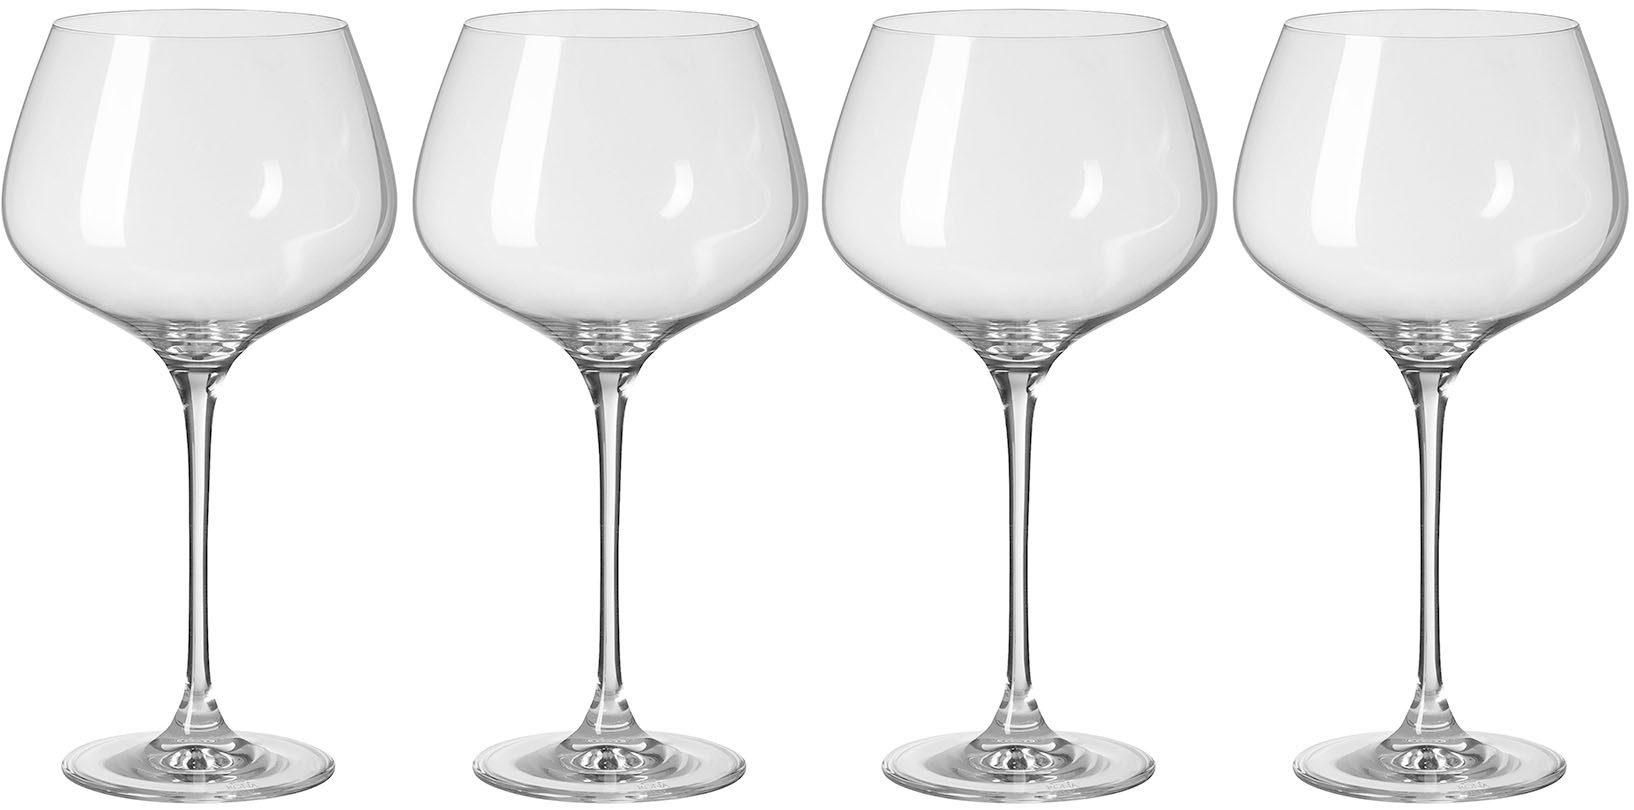 Fink Weinglas PREMIO, Glas, Weißweinglas, Cocktailglas, 4er Set, transparent